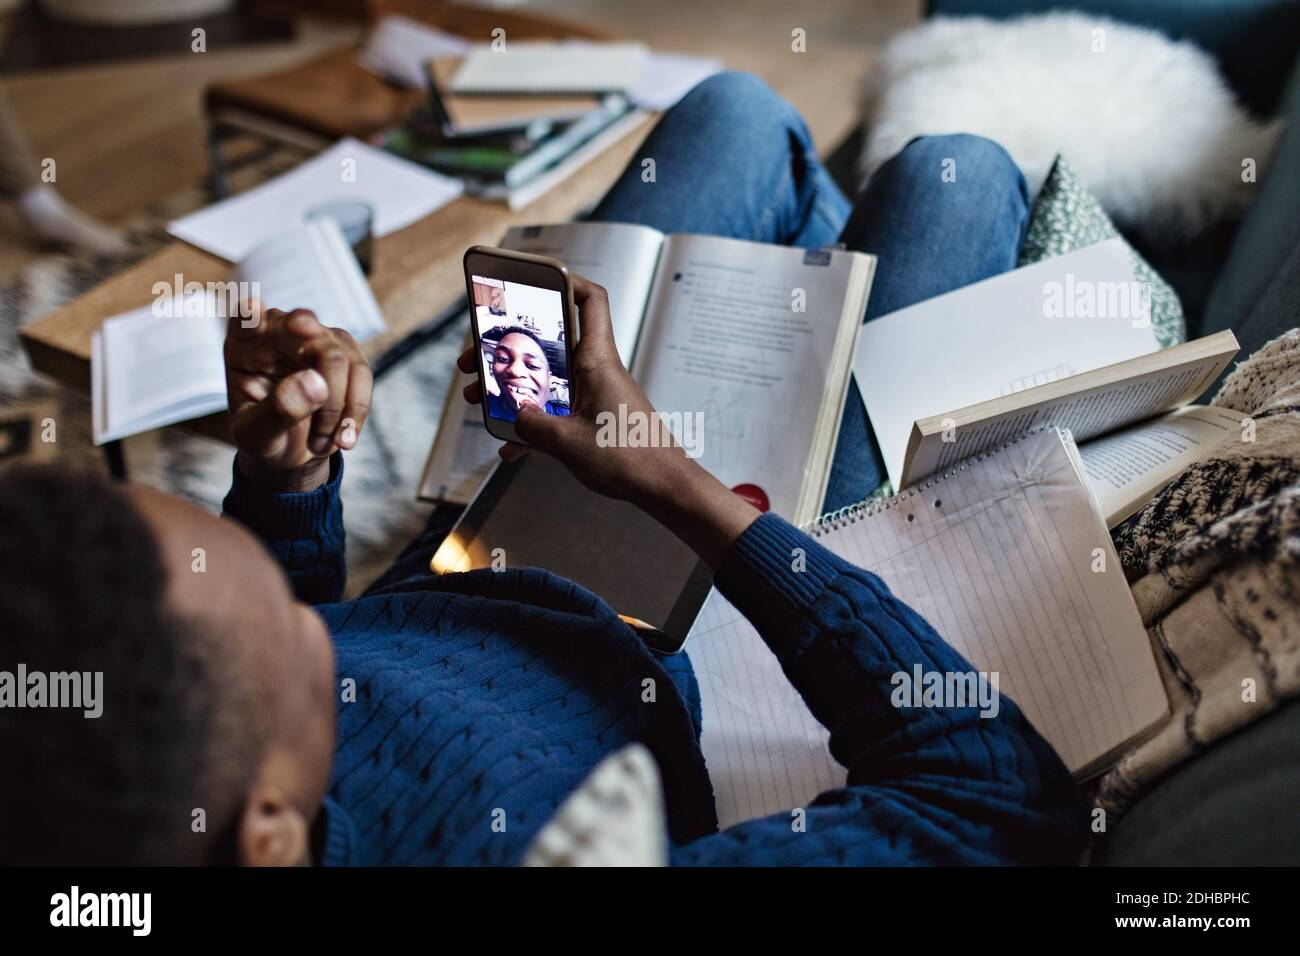 Vue en grand angle d'un adolescent heureux qui prend le selfie pendant étudier dans le salon à la maison Banque D'Images